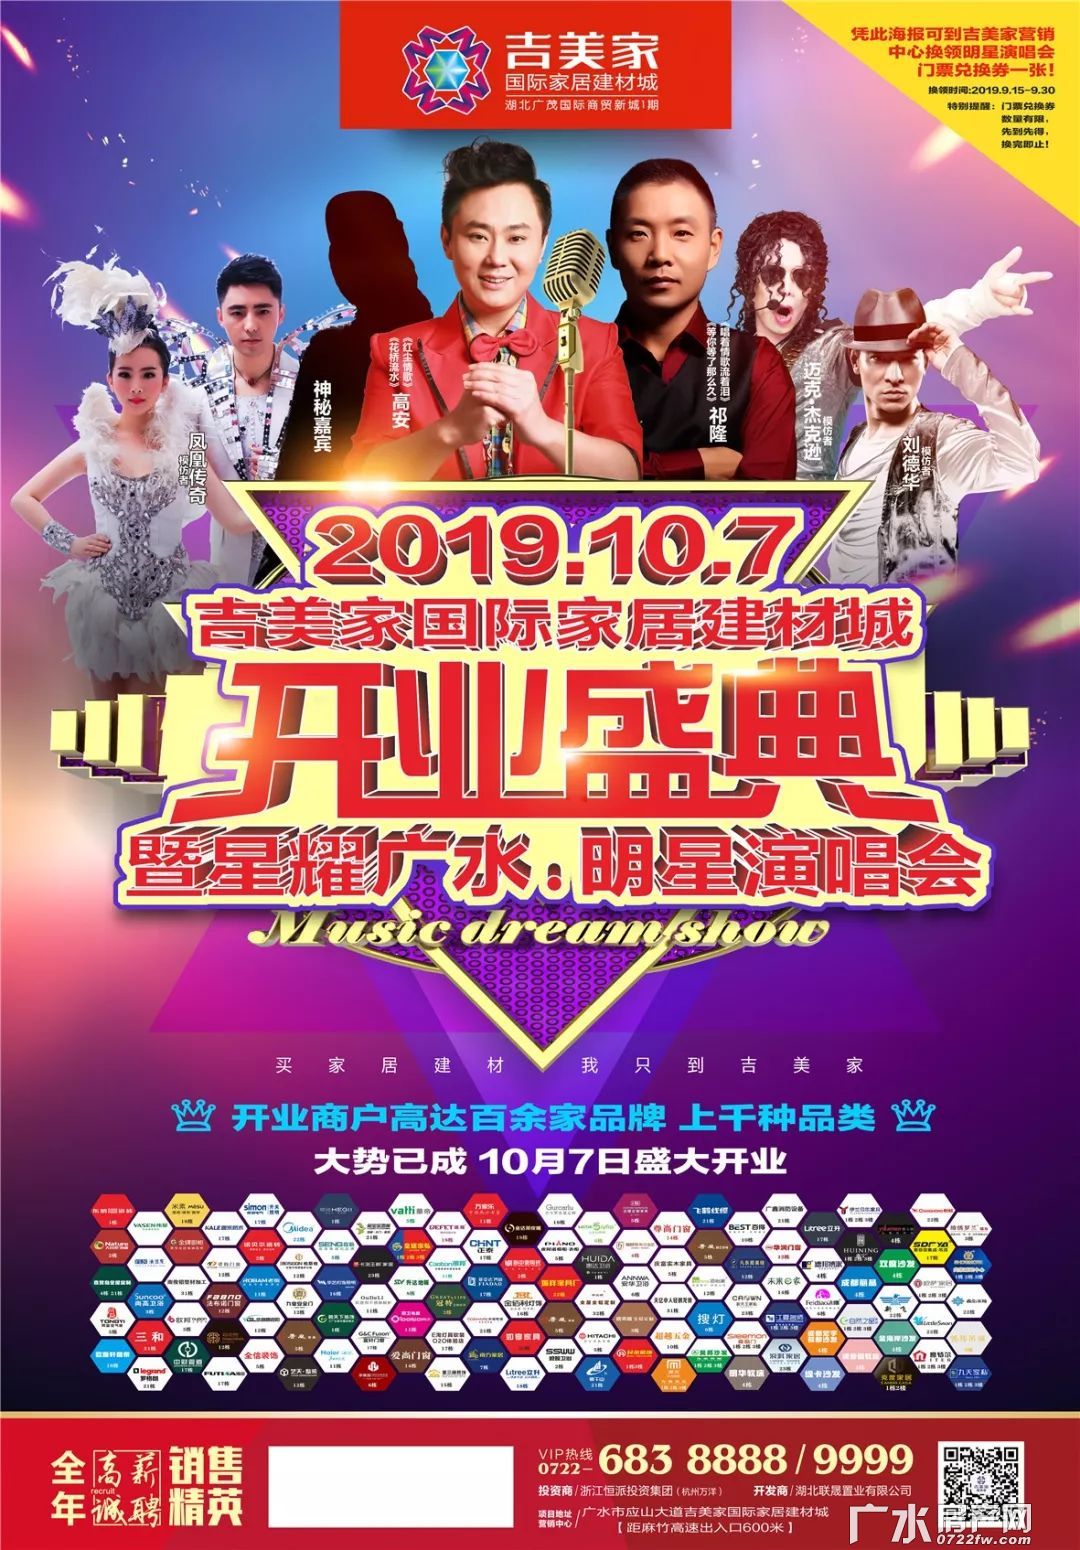 10月7日开业盛典——暨星耀广水明星演唱会！